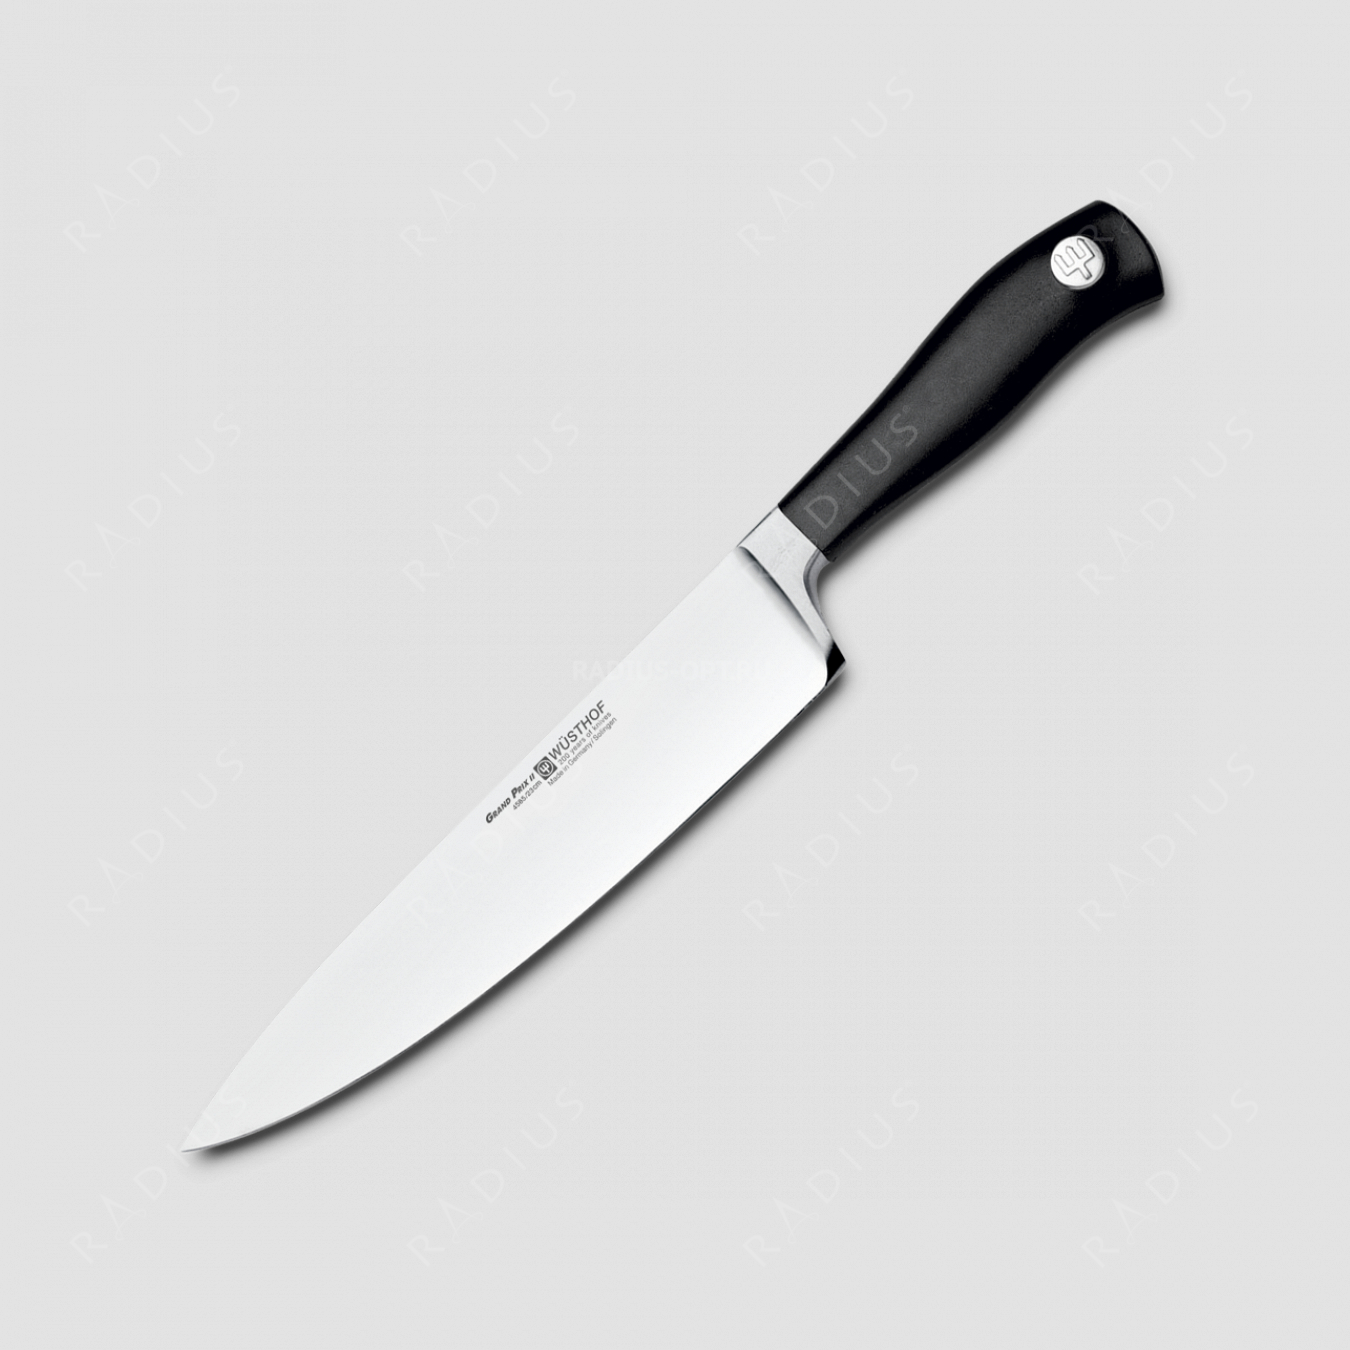 Профессиональный поварской кухонный нож 23 см, серия Grand Prix II, WUESTHOF, Золинген, Германия